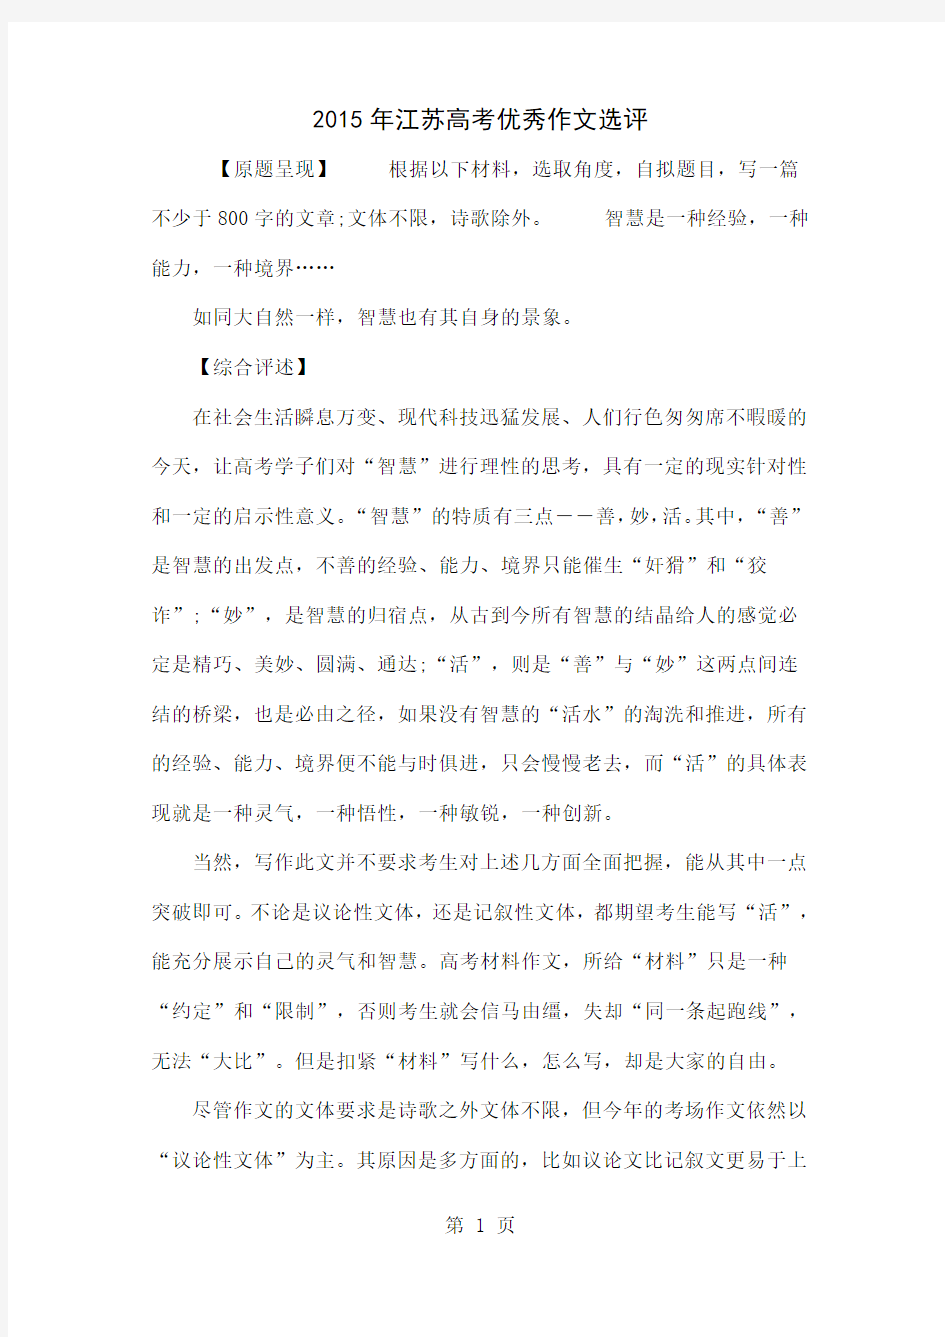 2015年江苏高考优秀作文选评共5页